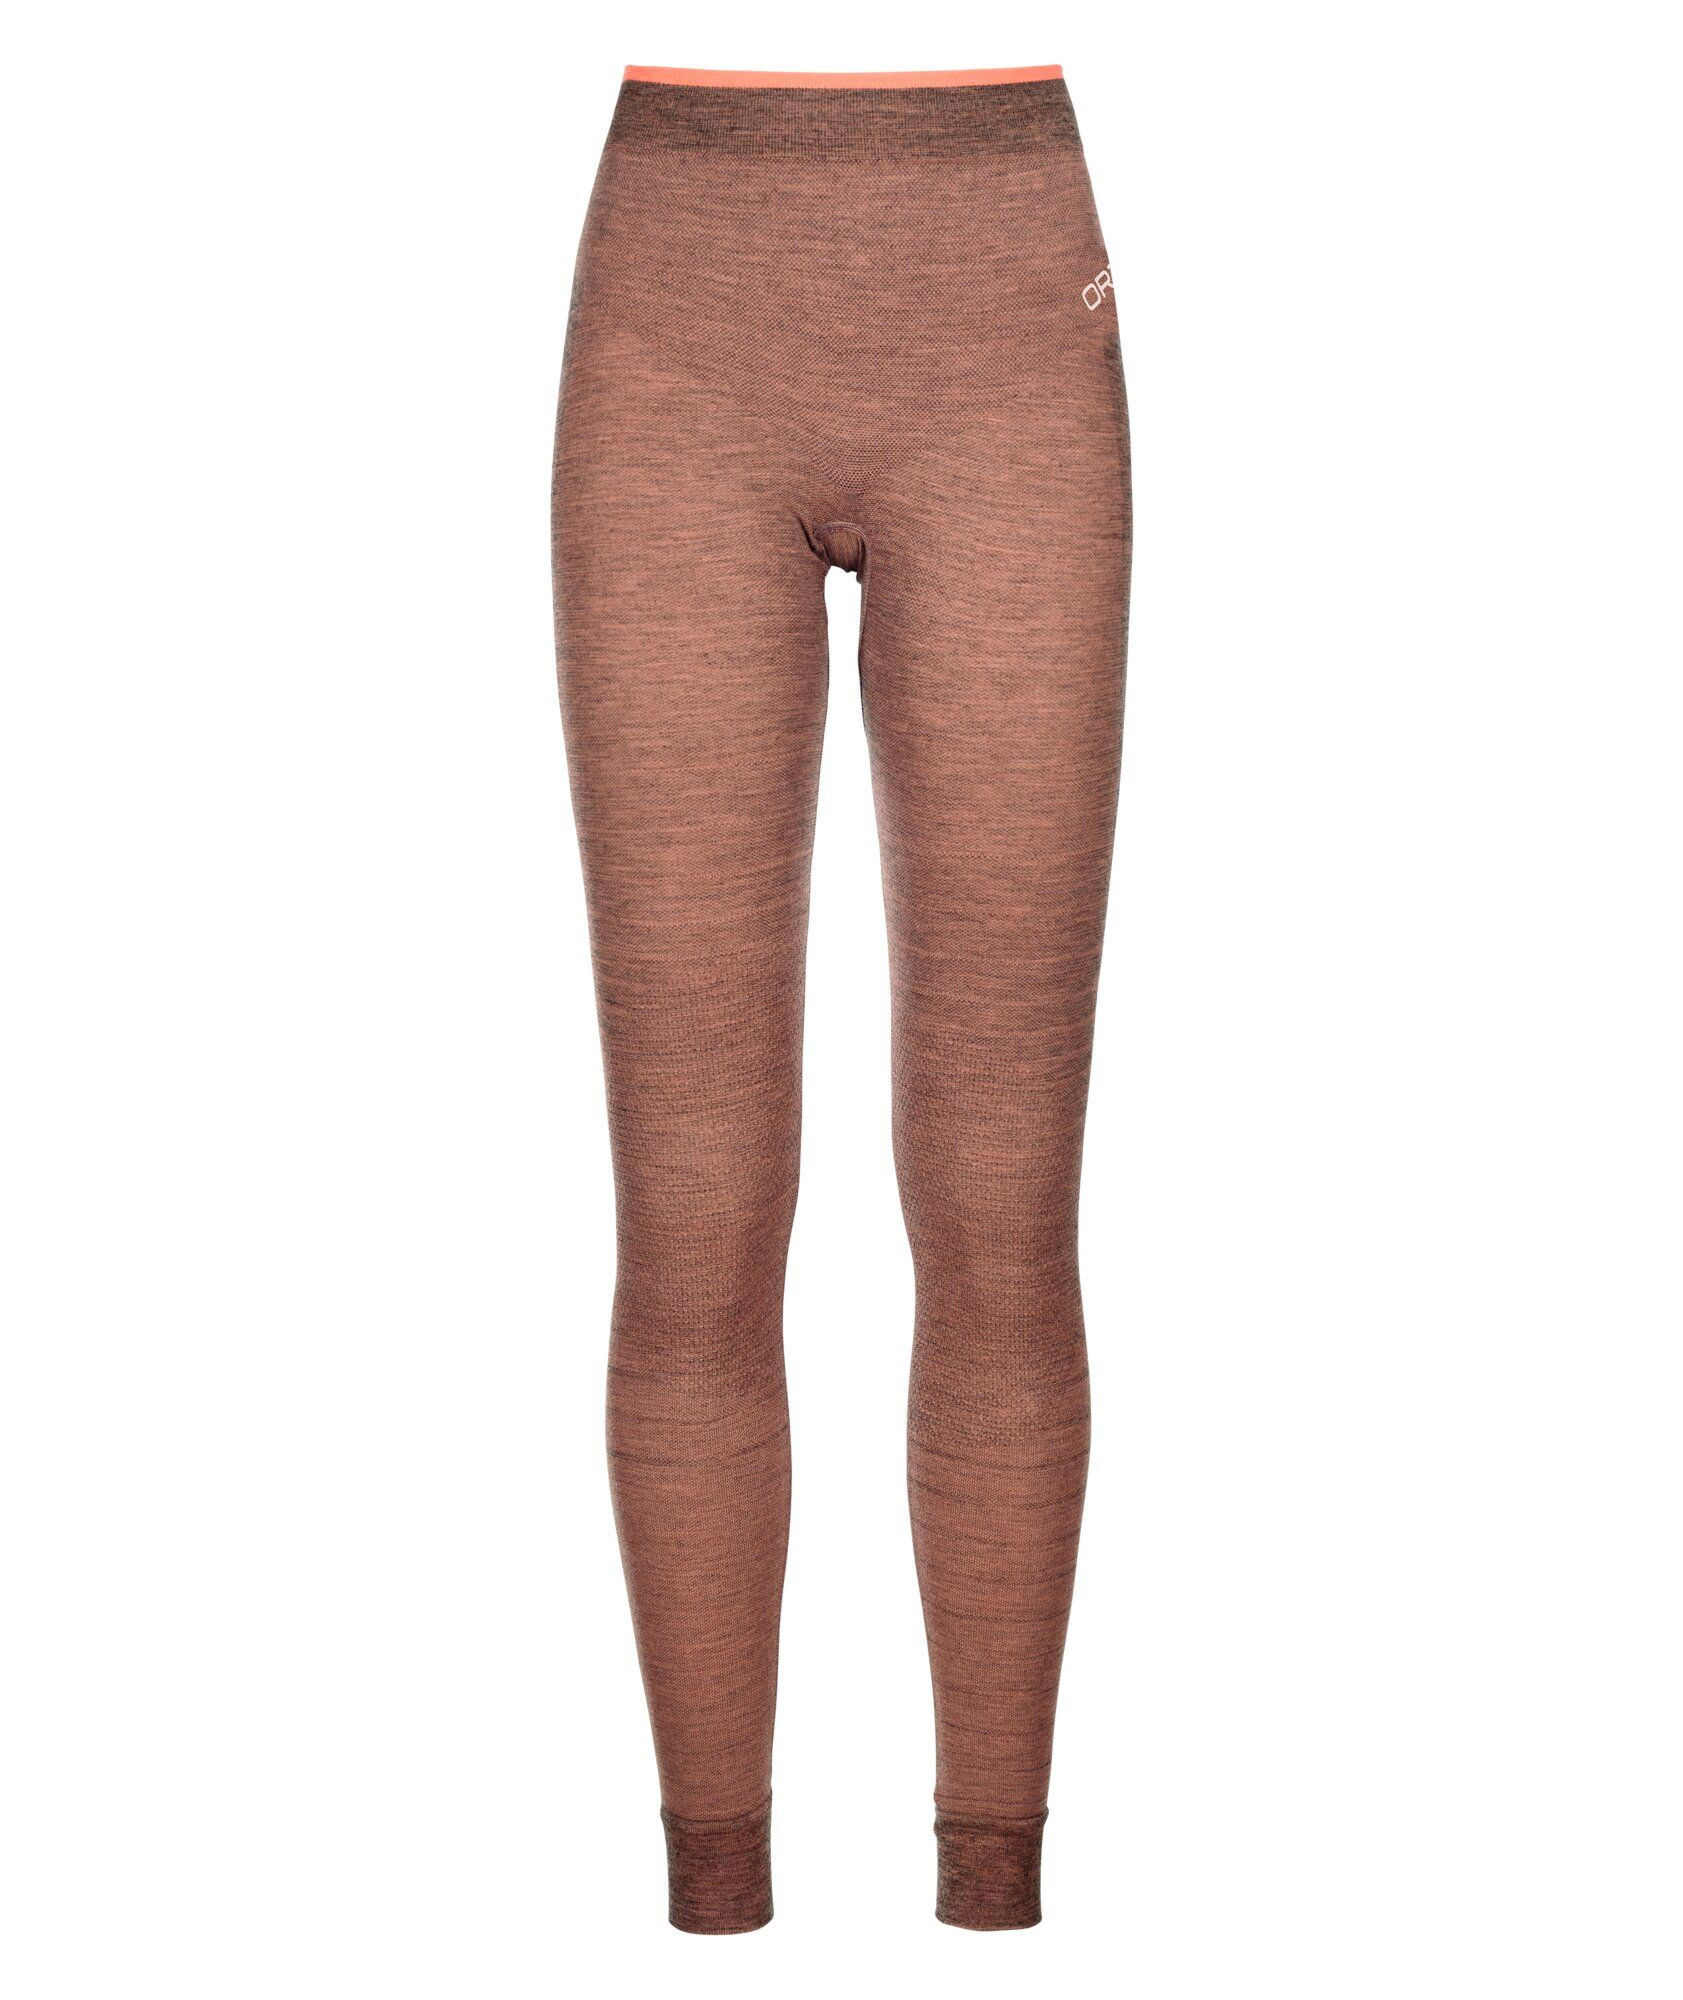 Ortovox 230 Competition Long Pants - Sous-vêtement thermique femme | Hardloop